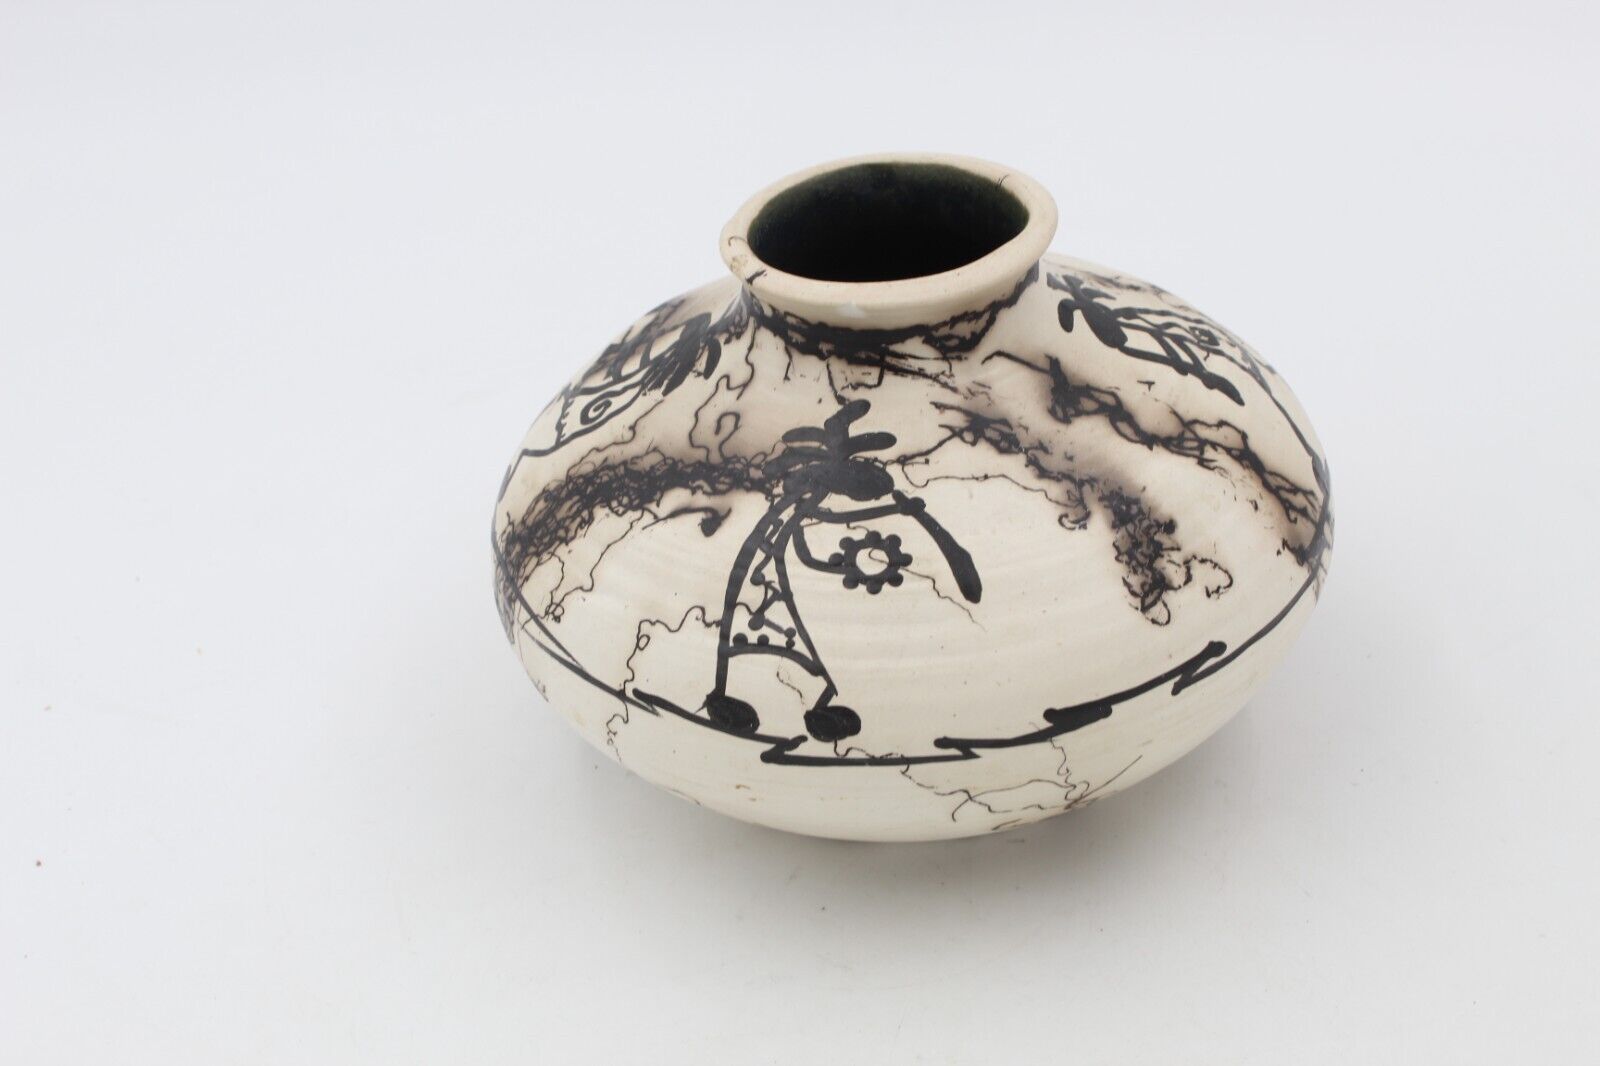 Adele Native American Black White Flower Vase 5\'\'x 7\'\'